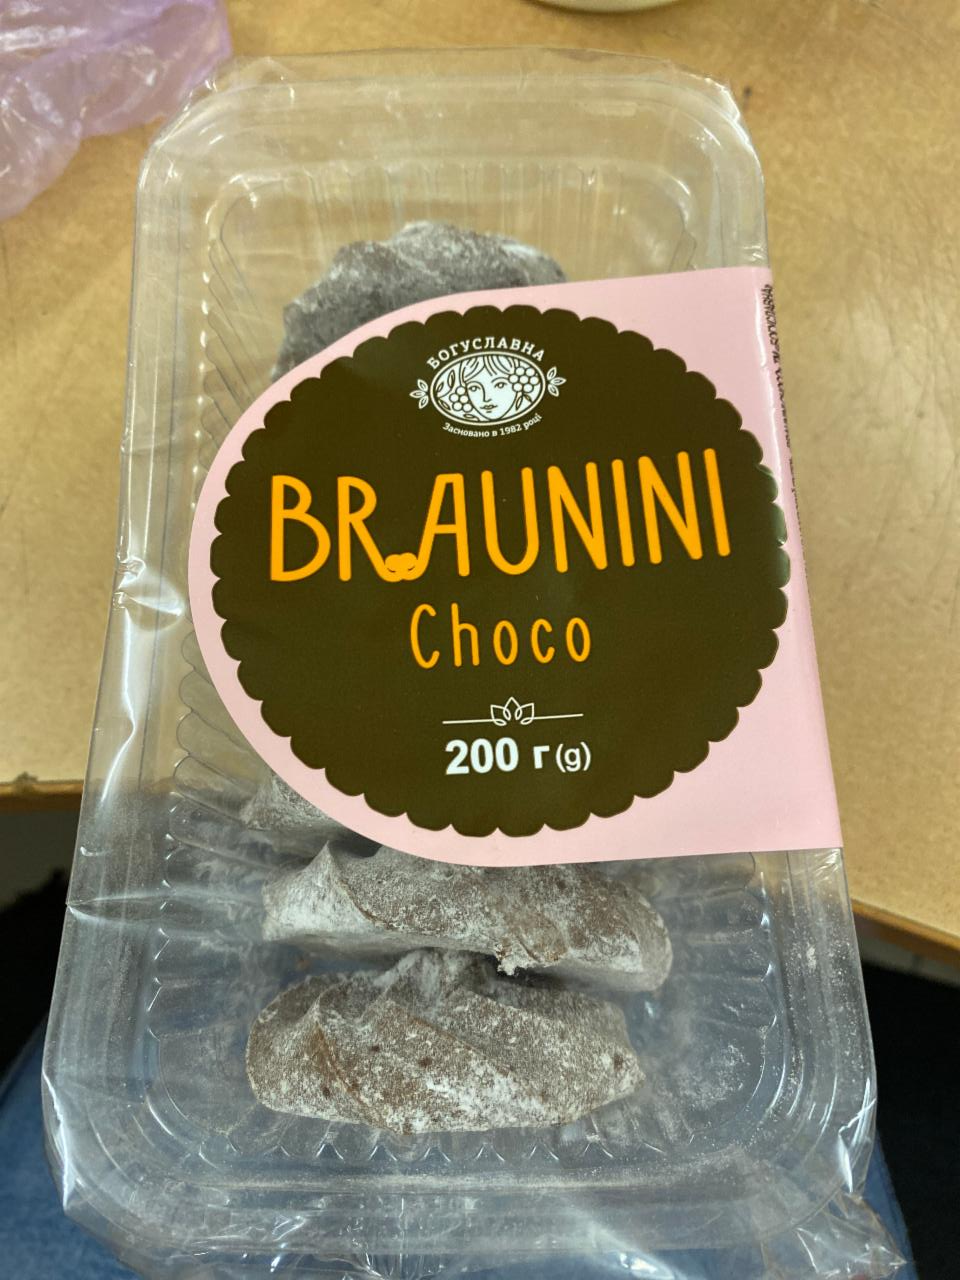 Фото - печенье сдобное Braunini со вкусом шоколада в сахарной пудре Богуславна